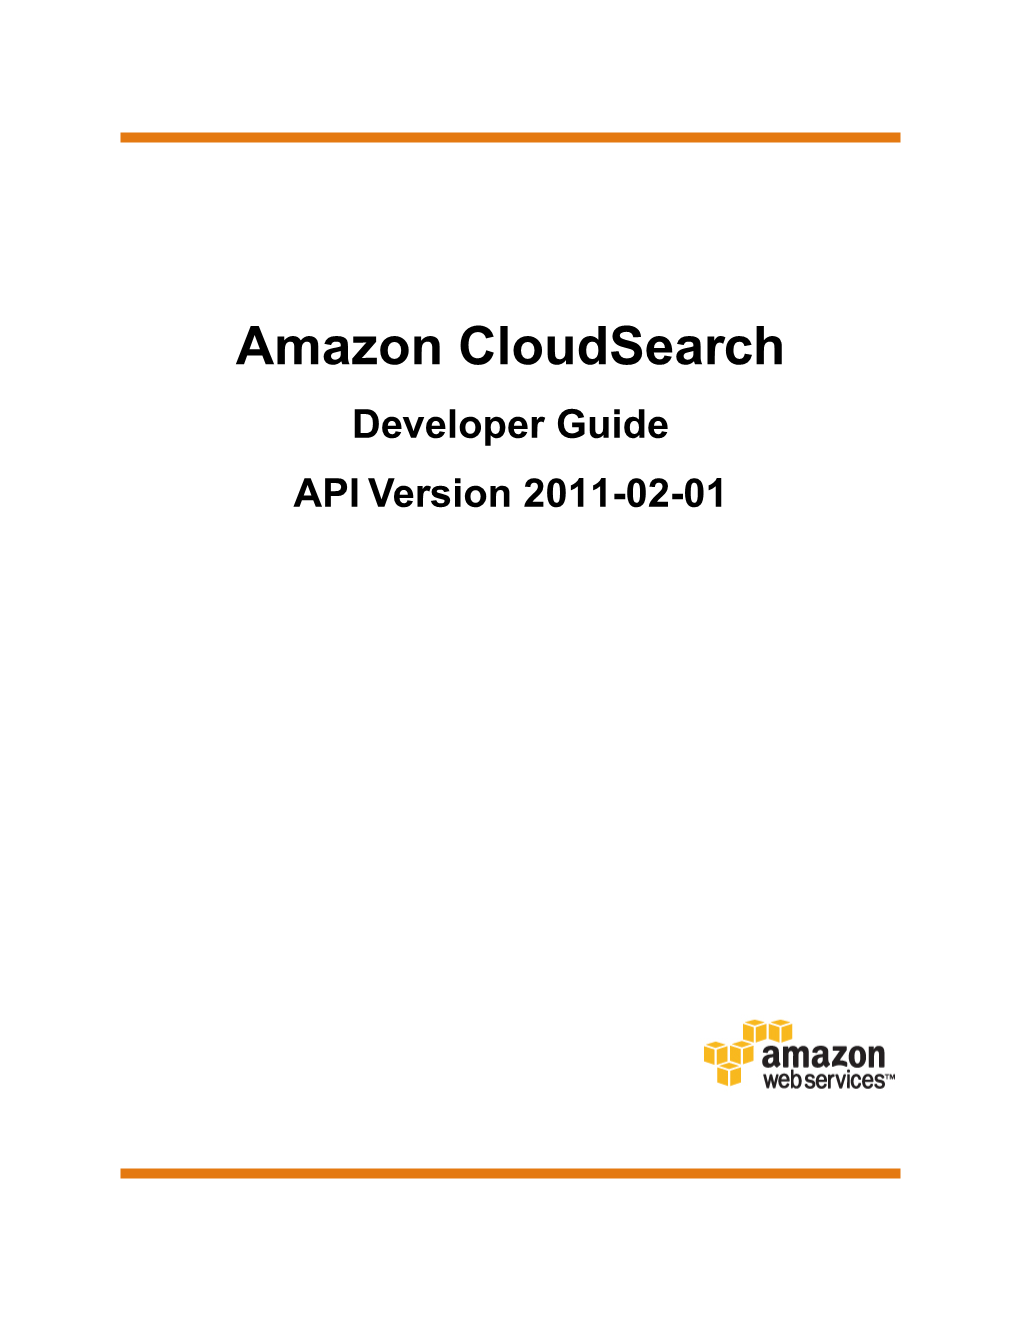 Amazon Cloudsearch Developer Guide API Version 2011-02-01 Amazon Cloudsearch Developer Guide